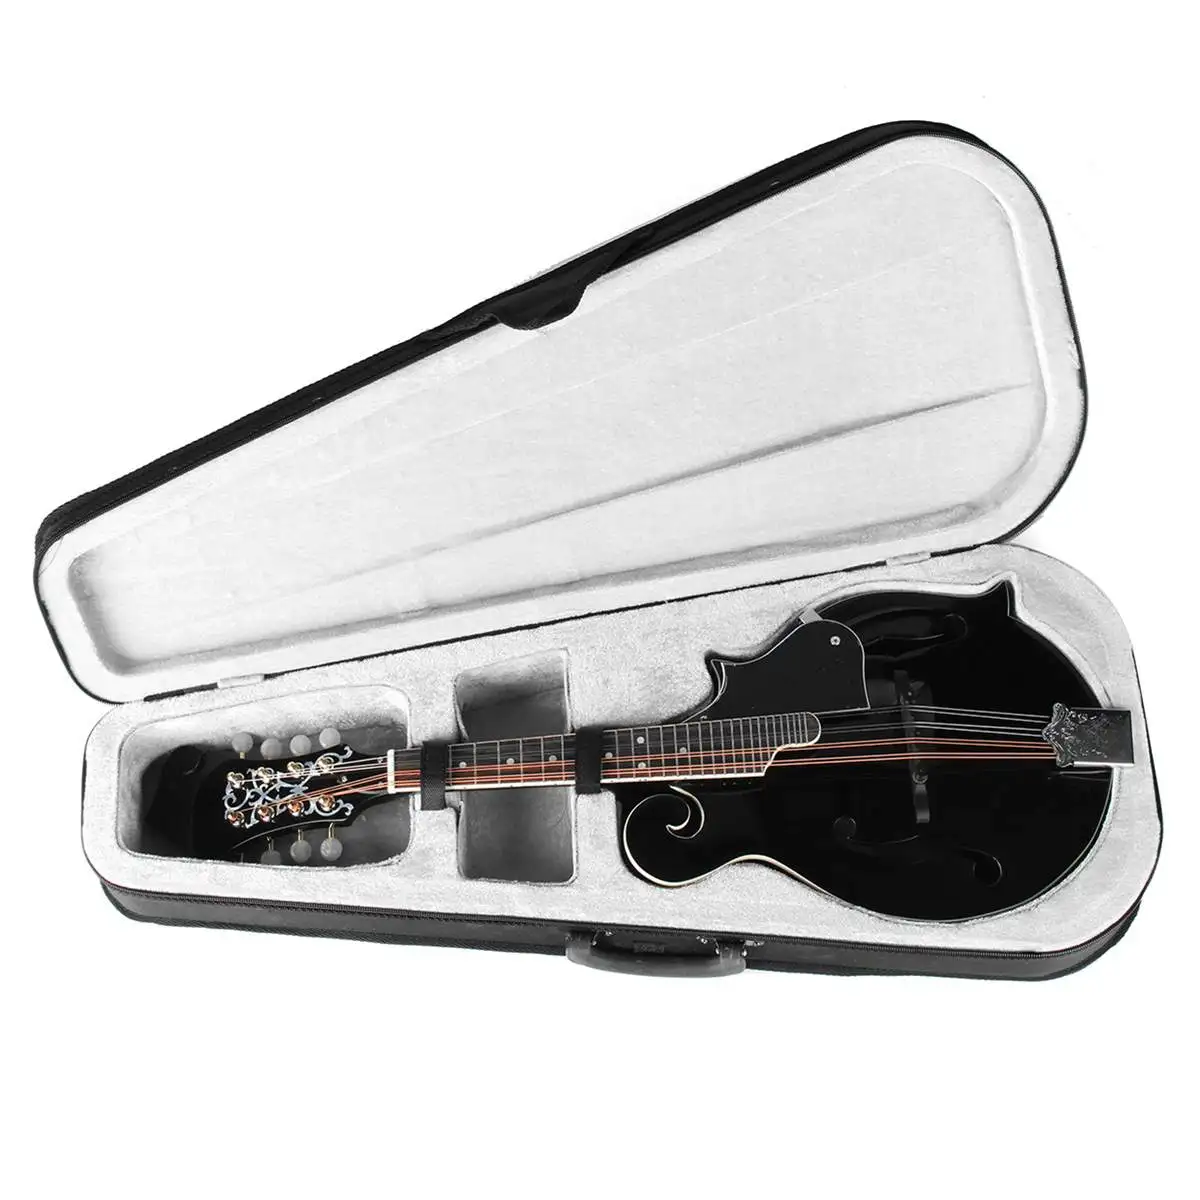 F Стиль 8 струн черный мандолин с палисандр стальная струна Регулируемый мост музыкальный инструмент с сумкой и 2 выбор